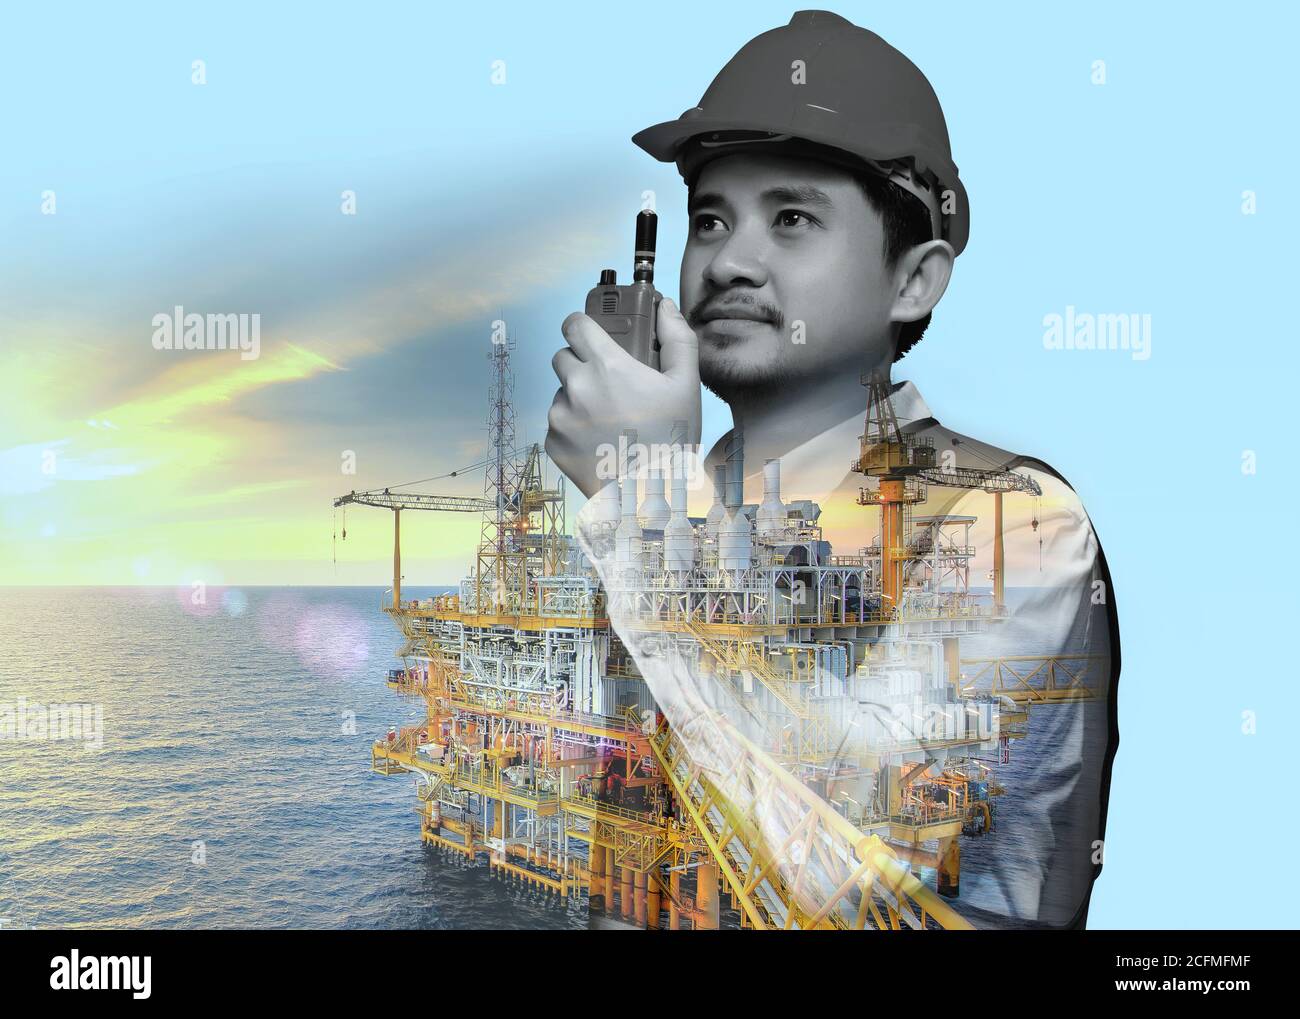 Ölbohrindustrie, Energie, Brennstoff und moderne Produktionstechnik.Industrie 4.0 Konzept. Stockfoto